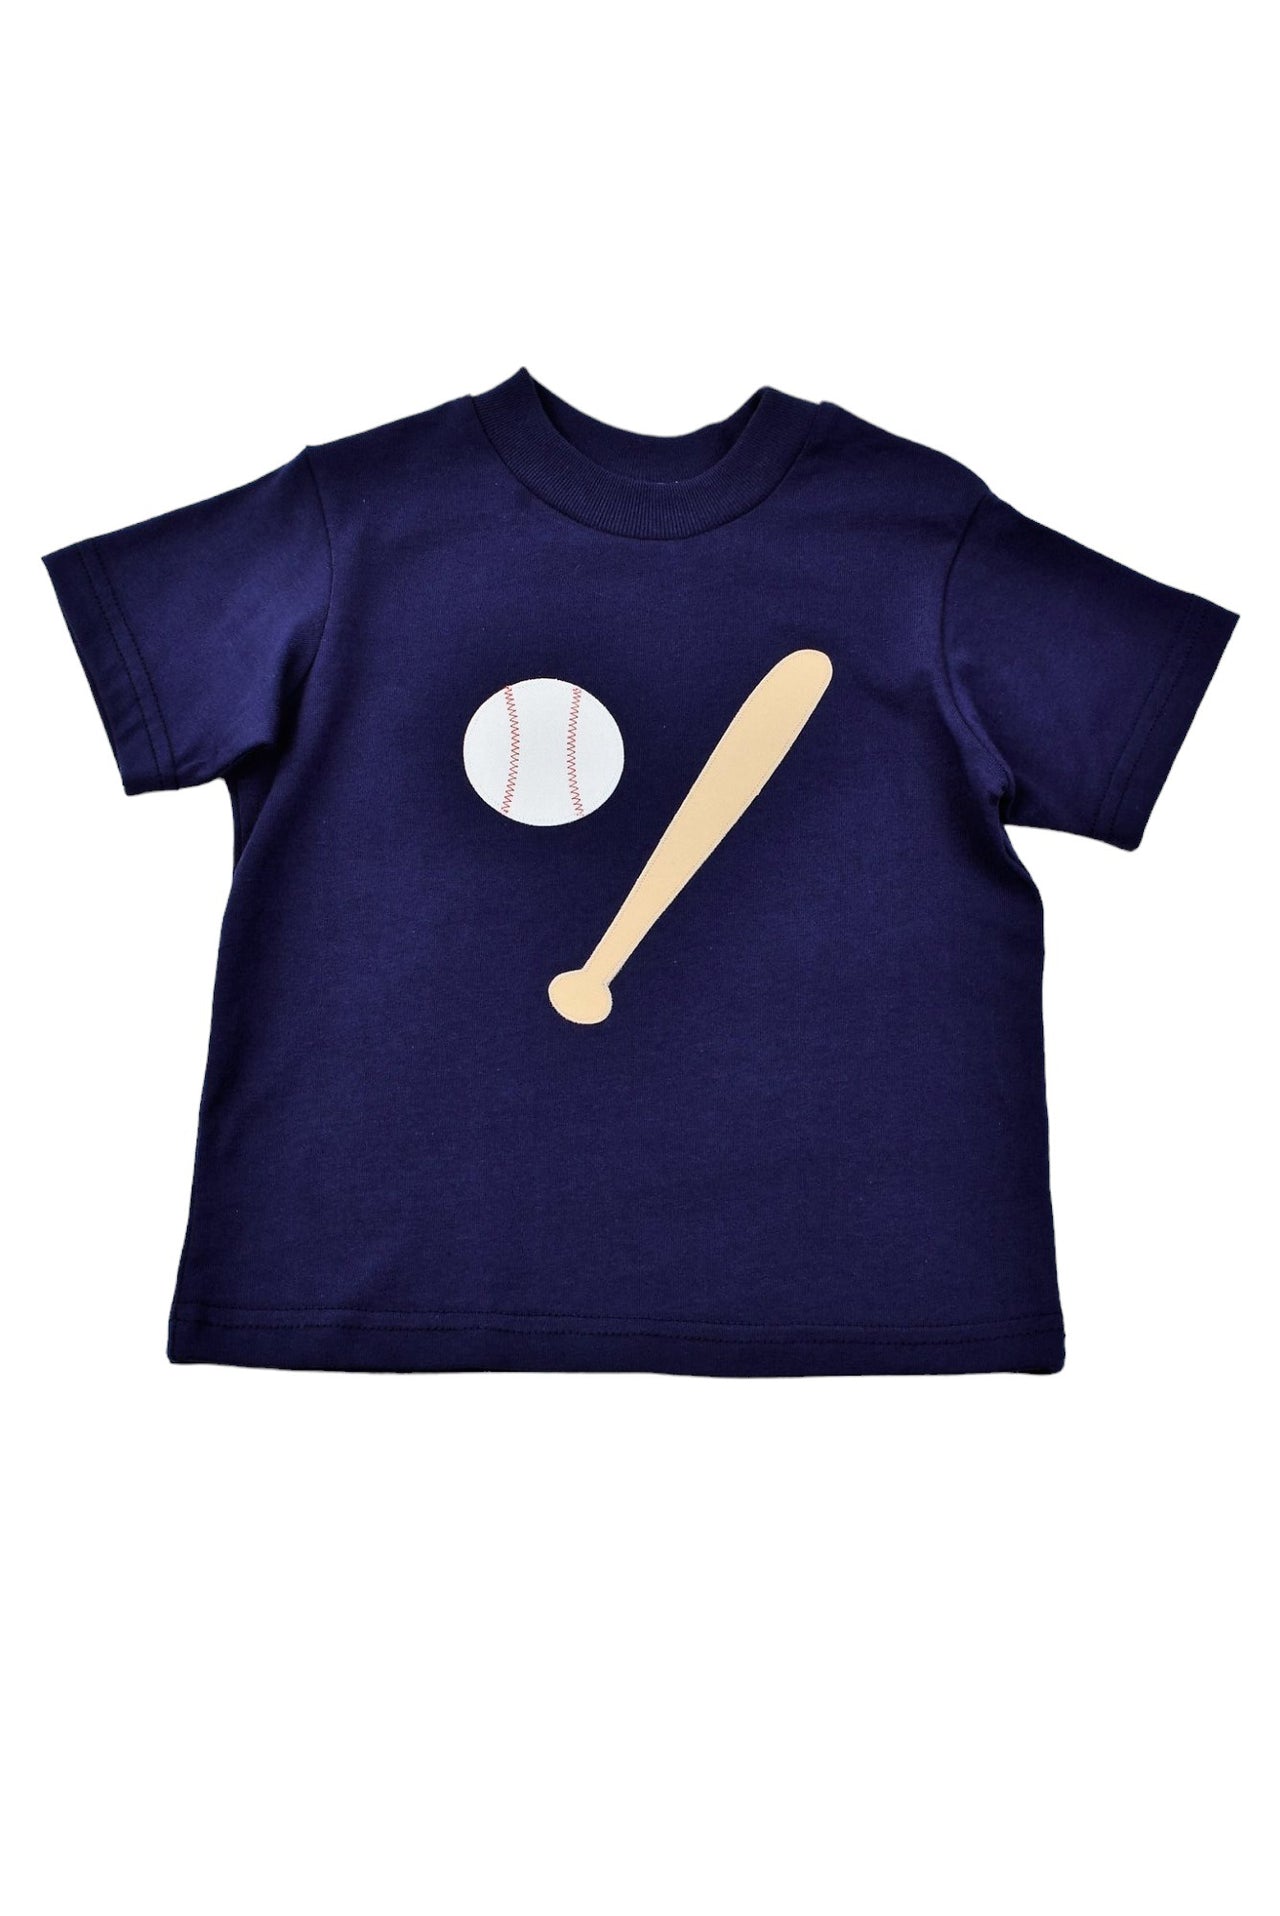 Funtasia Too Baseball Tee Shirt & Navy Seersucker Boys Shorts 69620/69621 5012